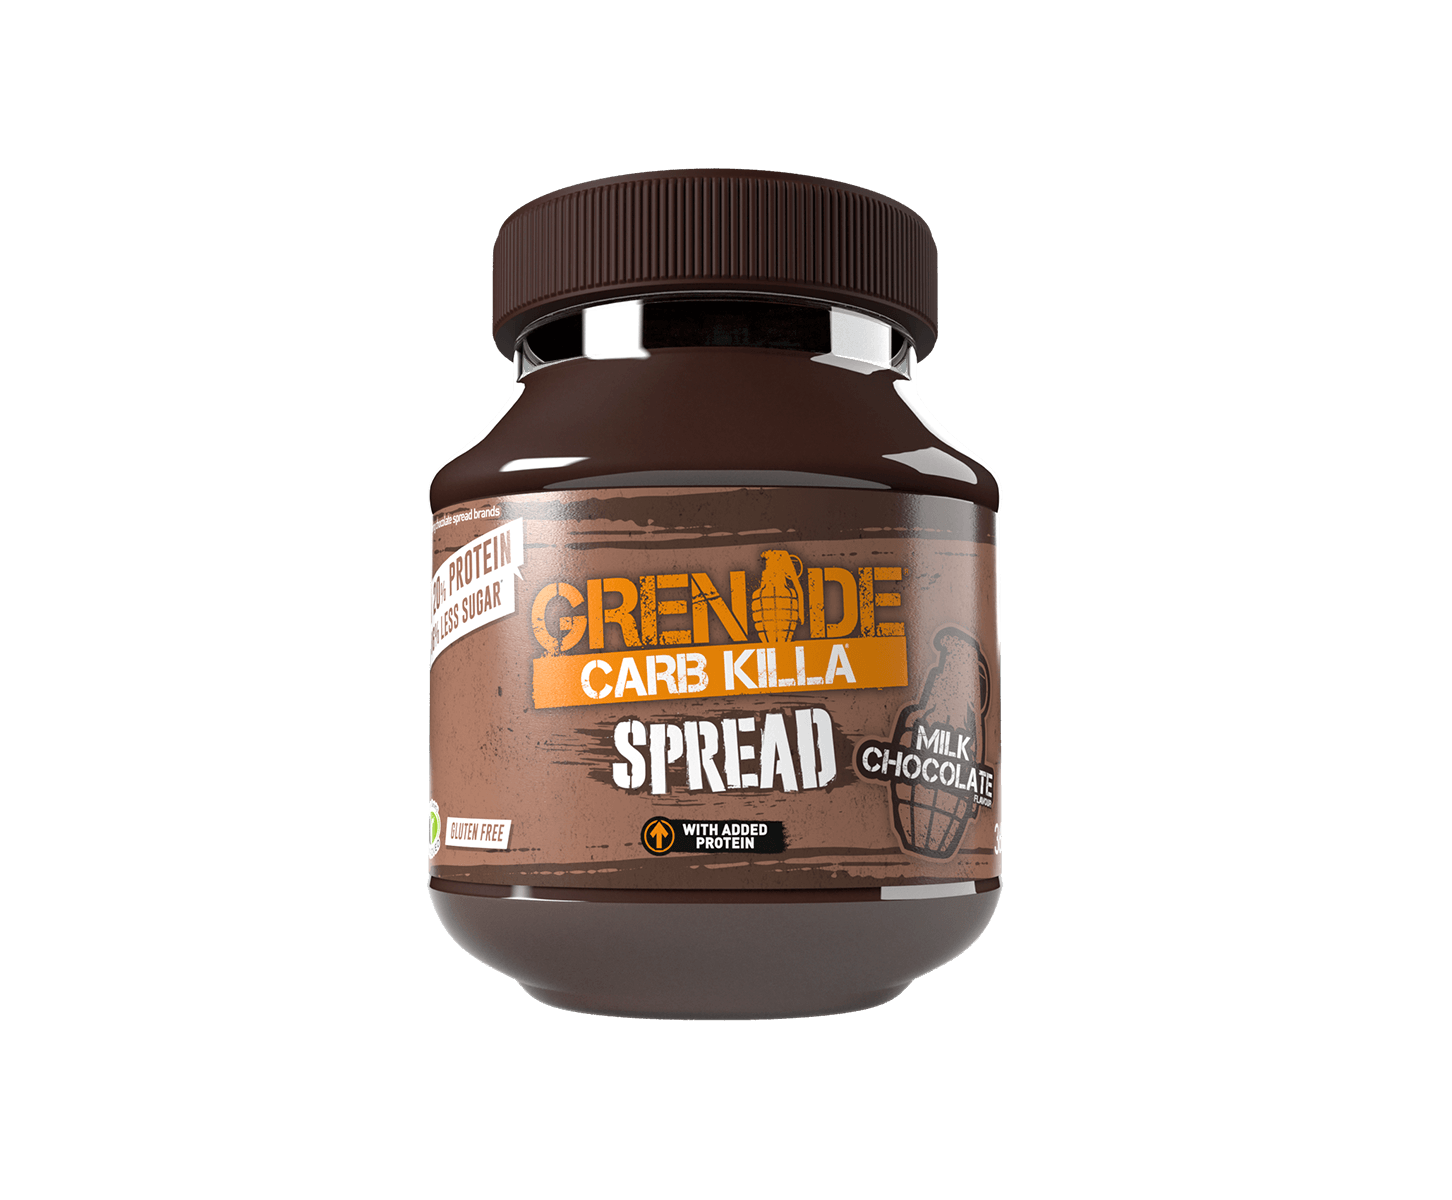 Grenade Carb Killa Protein Spread